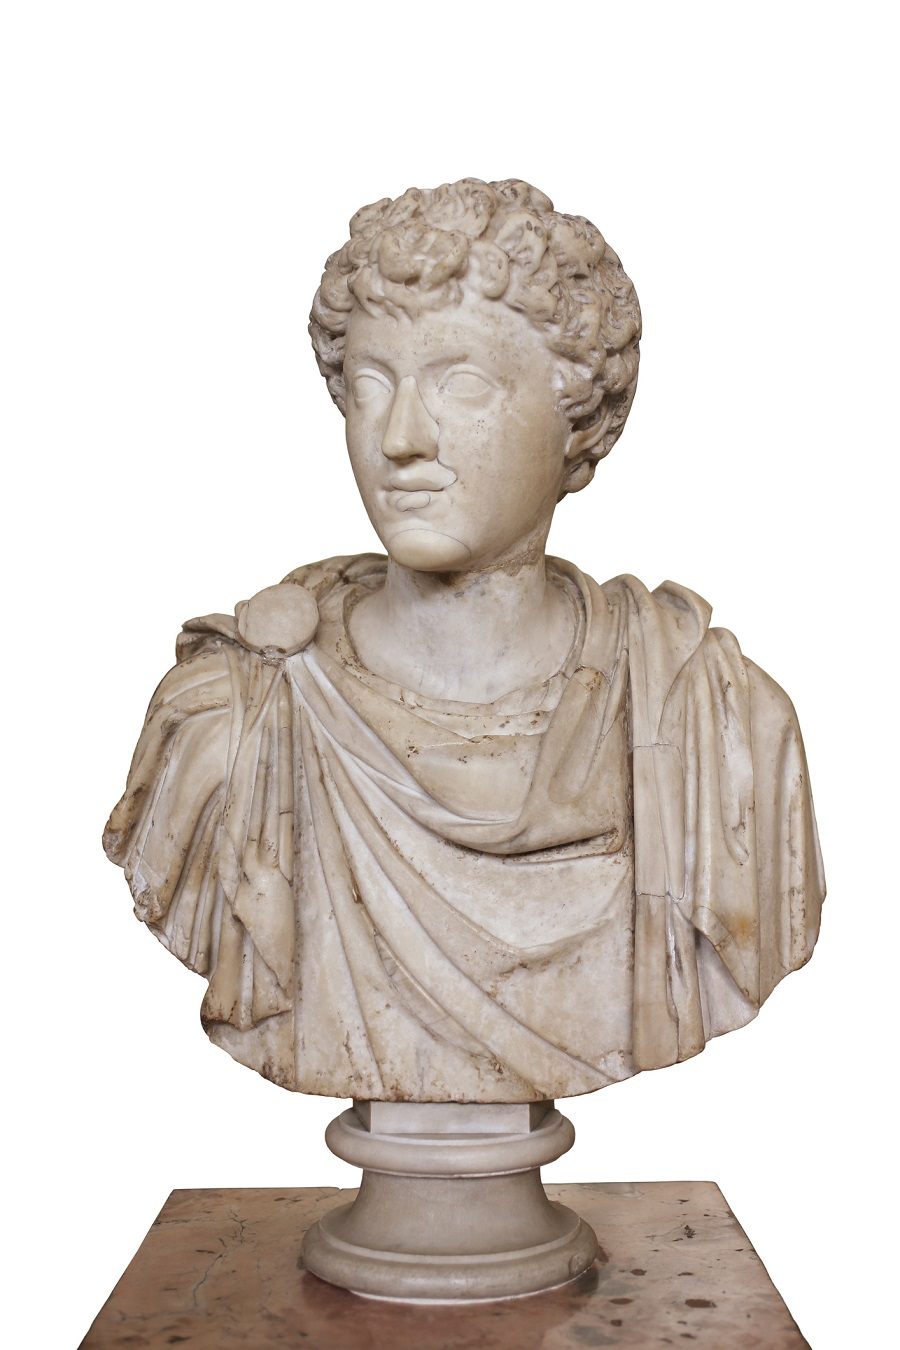 Portrait of the Young Marcus Aurelius